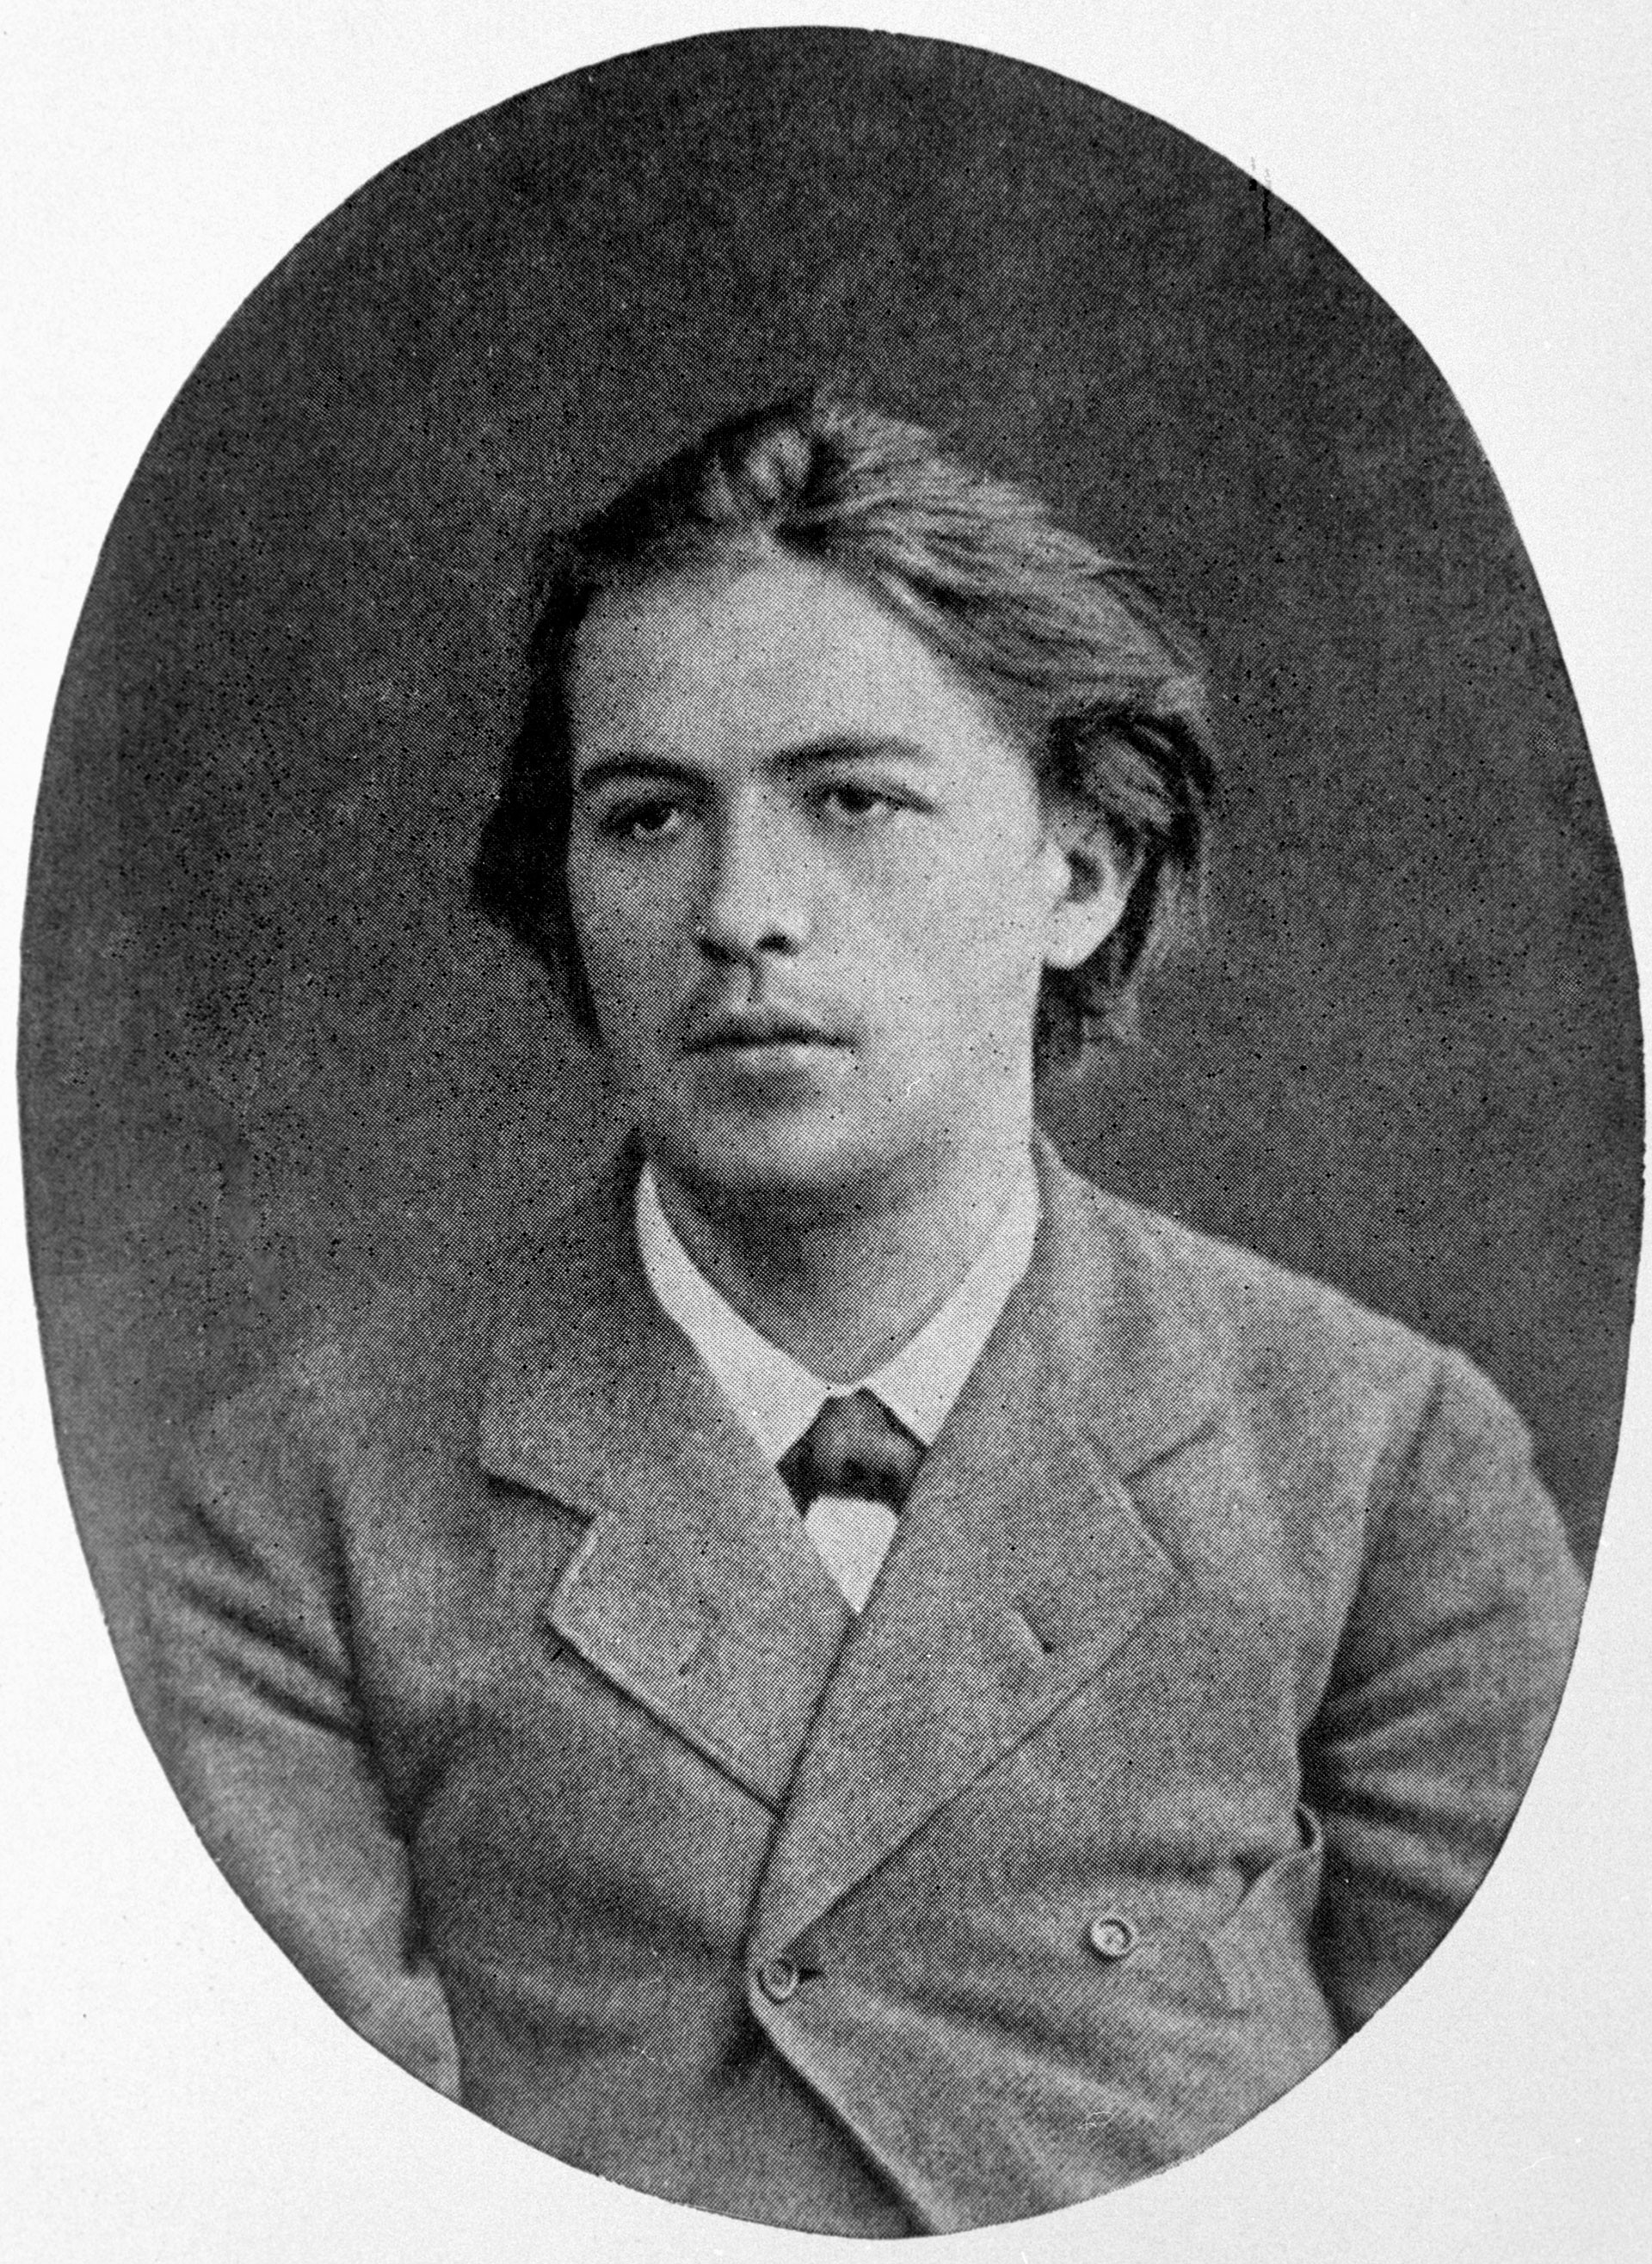 Kaum zu glauben, daber dieser junge Mann auf dem Bild ist Anton Tschechow. 1883 war der spätere Dramatiker noch Student der Medizinischen Fakultät der Moskauer Staatsuniversität.